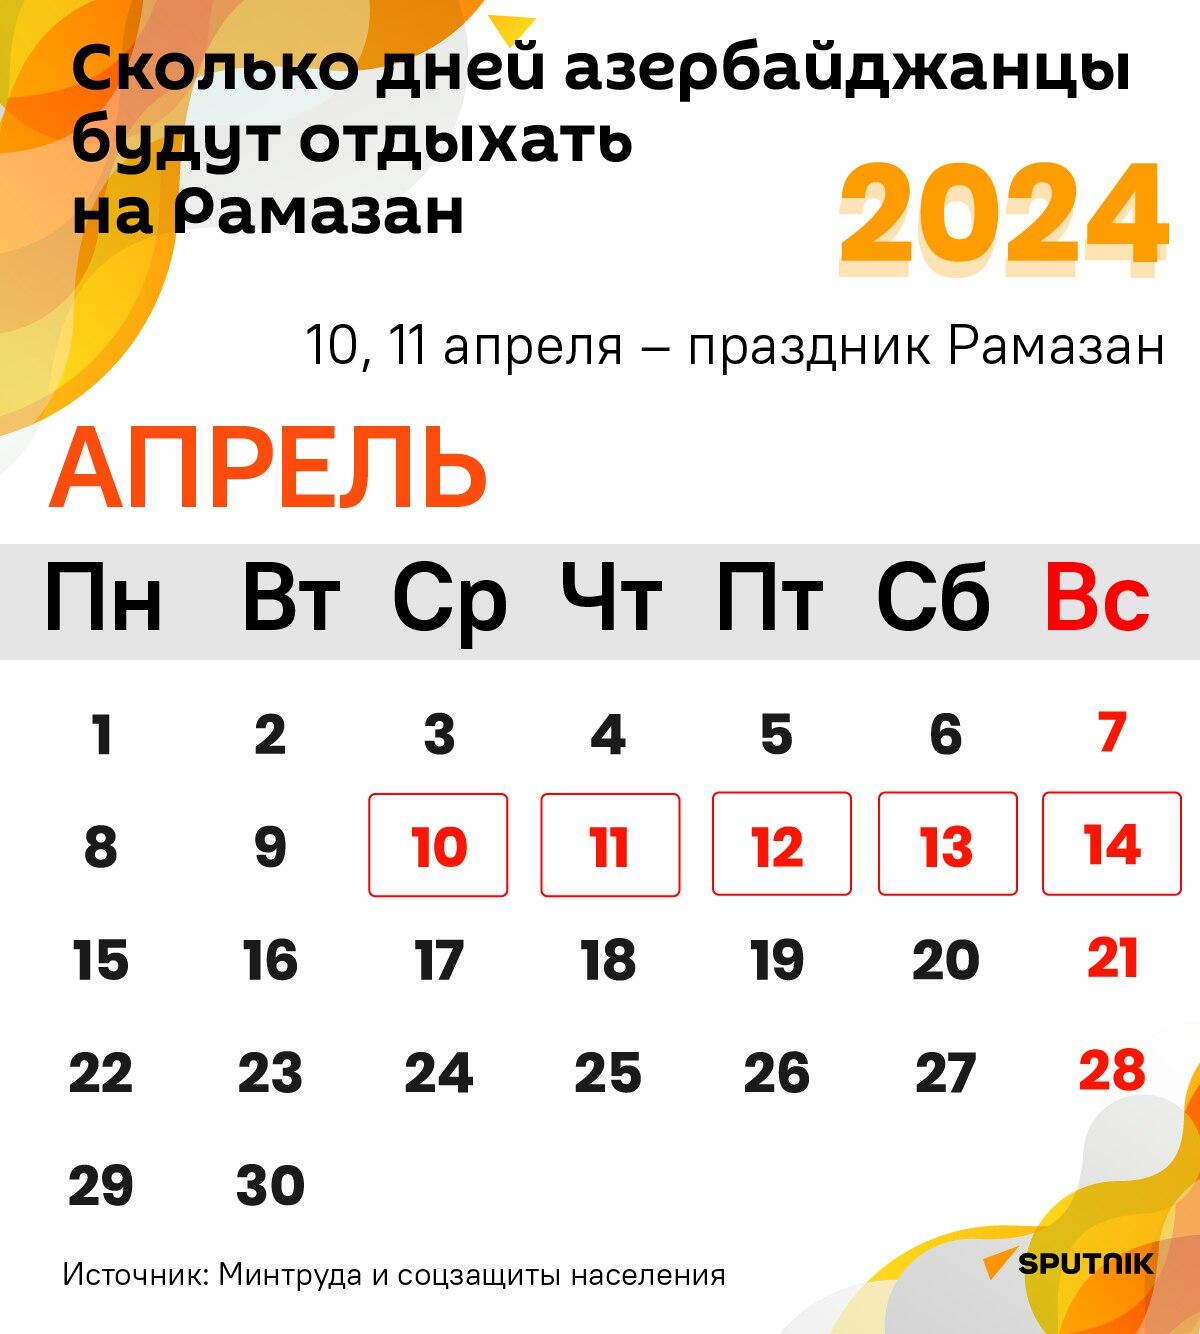 Инфографика: Сколько дней азербайджанцы будут отдыхать на Рамазан - Sputnik Азербайджан